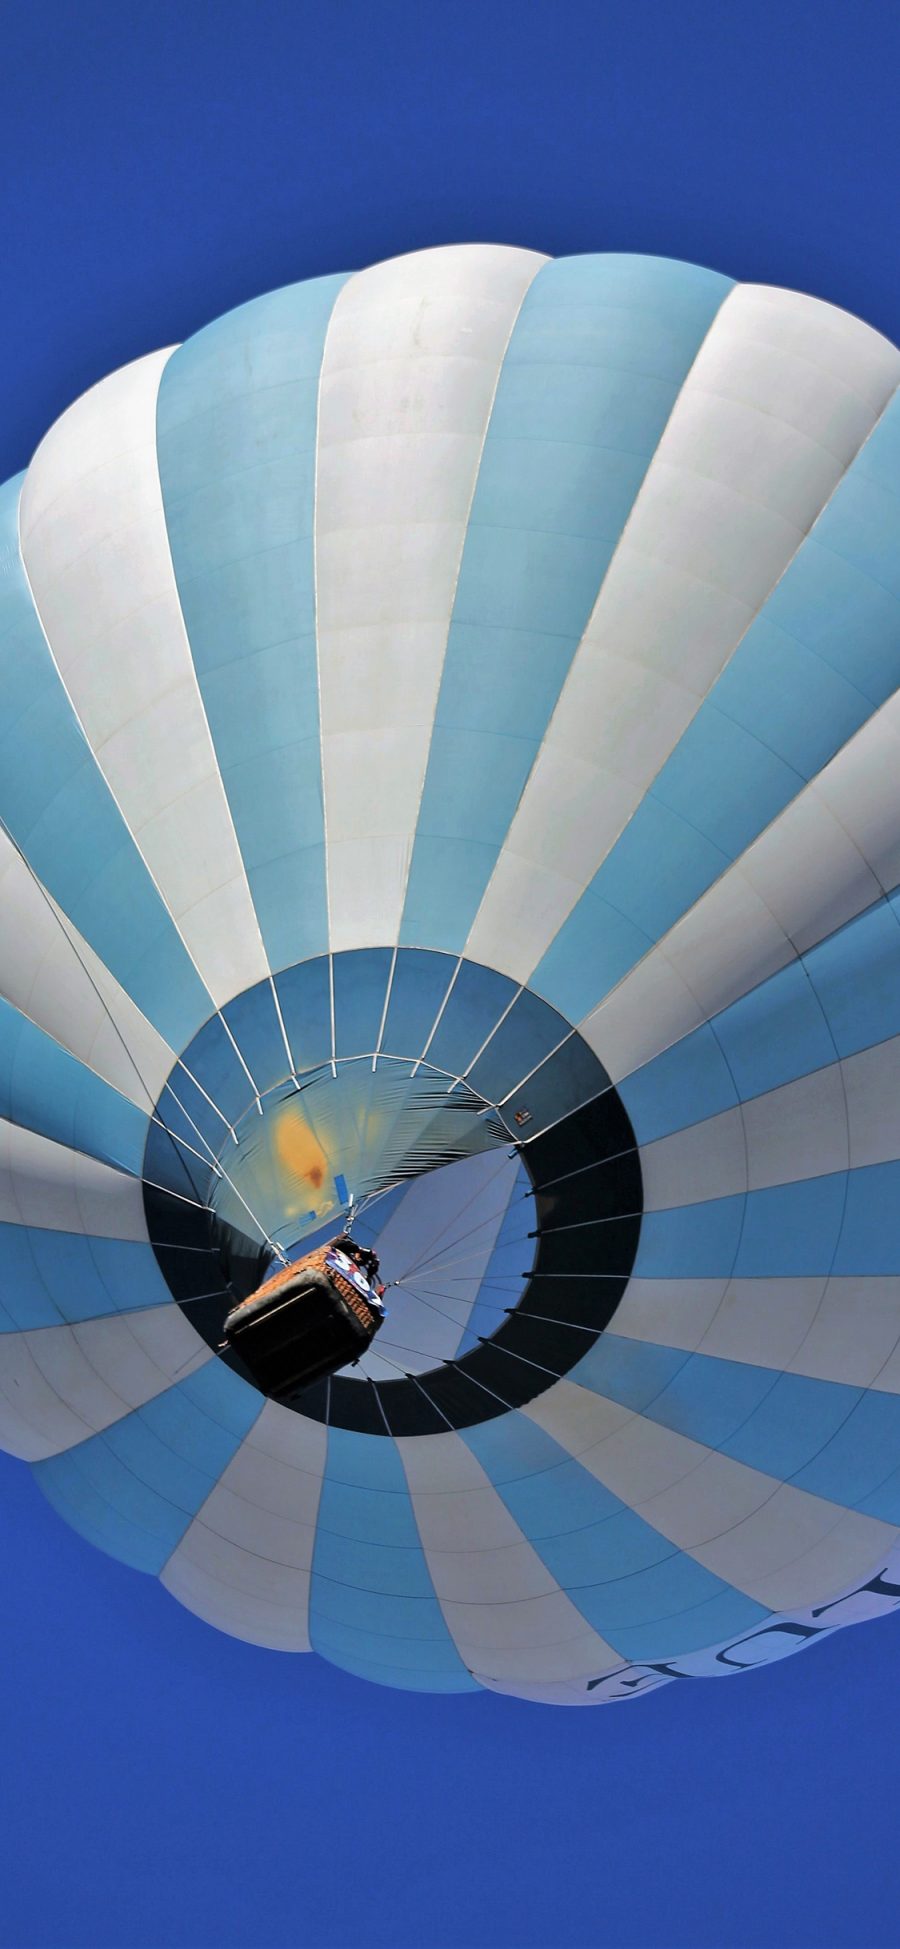 [2436×1125]热气球 蓝色 条纹 飞行 天空 苹果手机壁纸图片